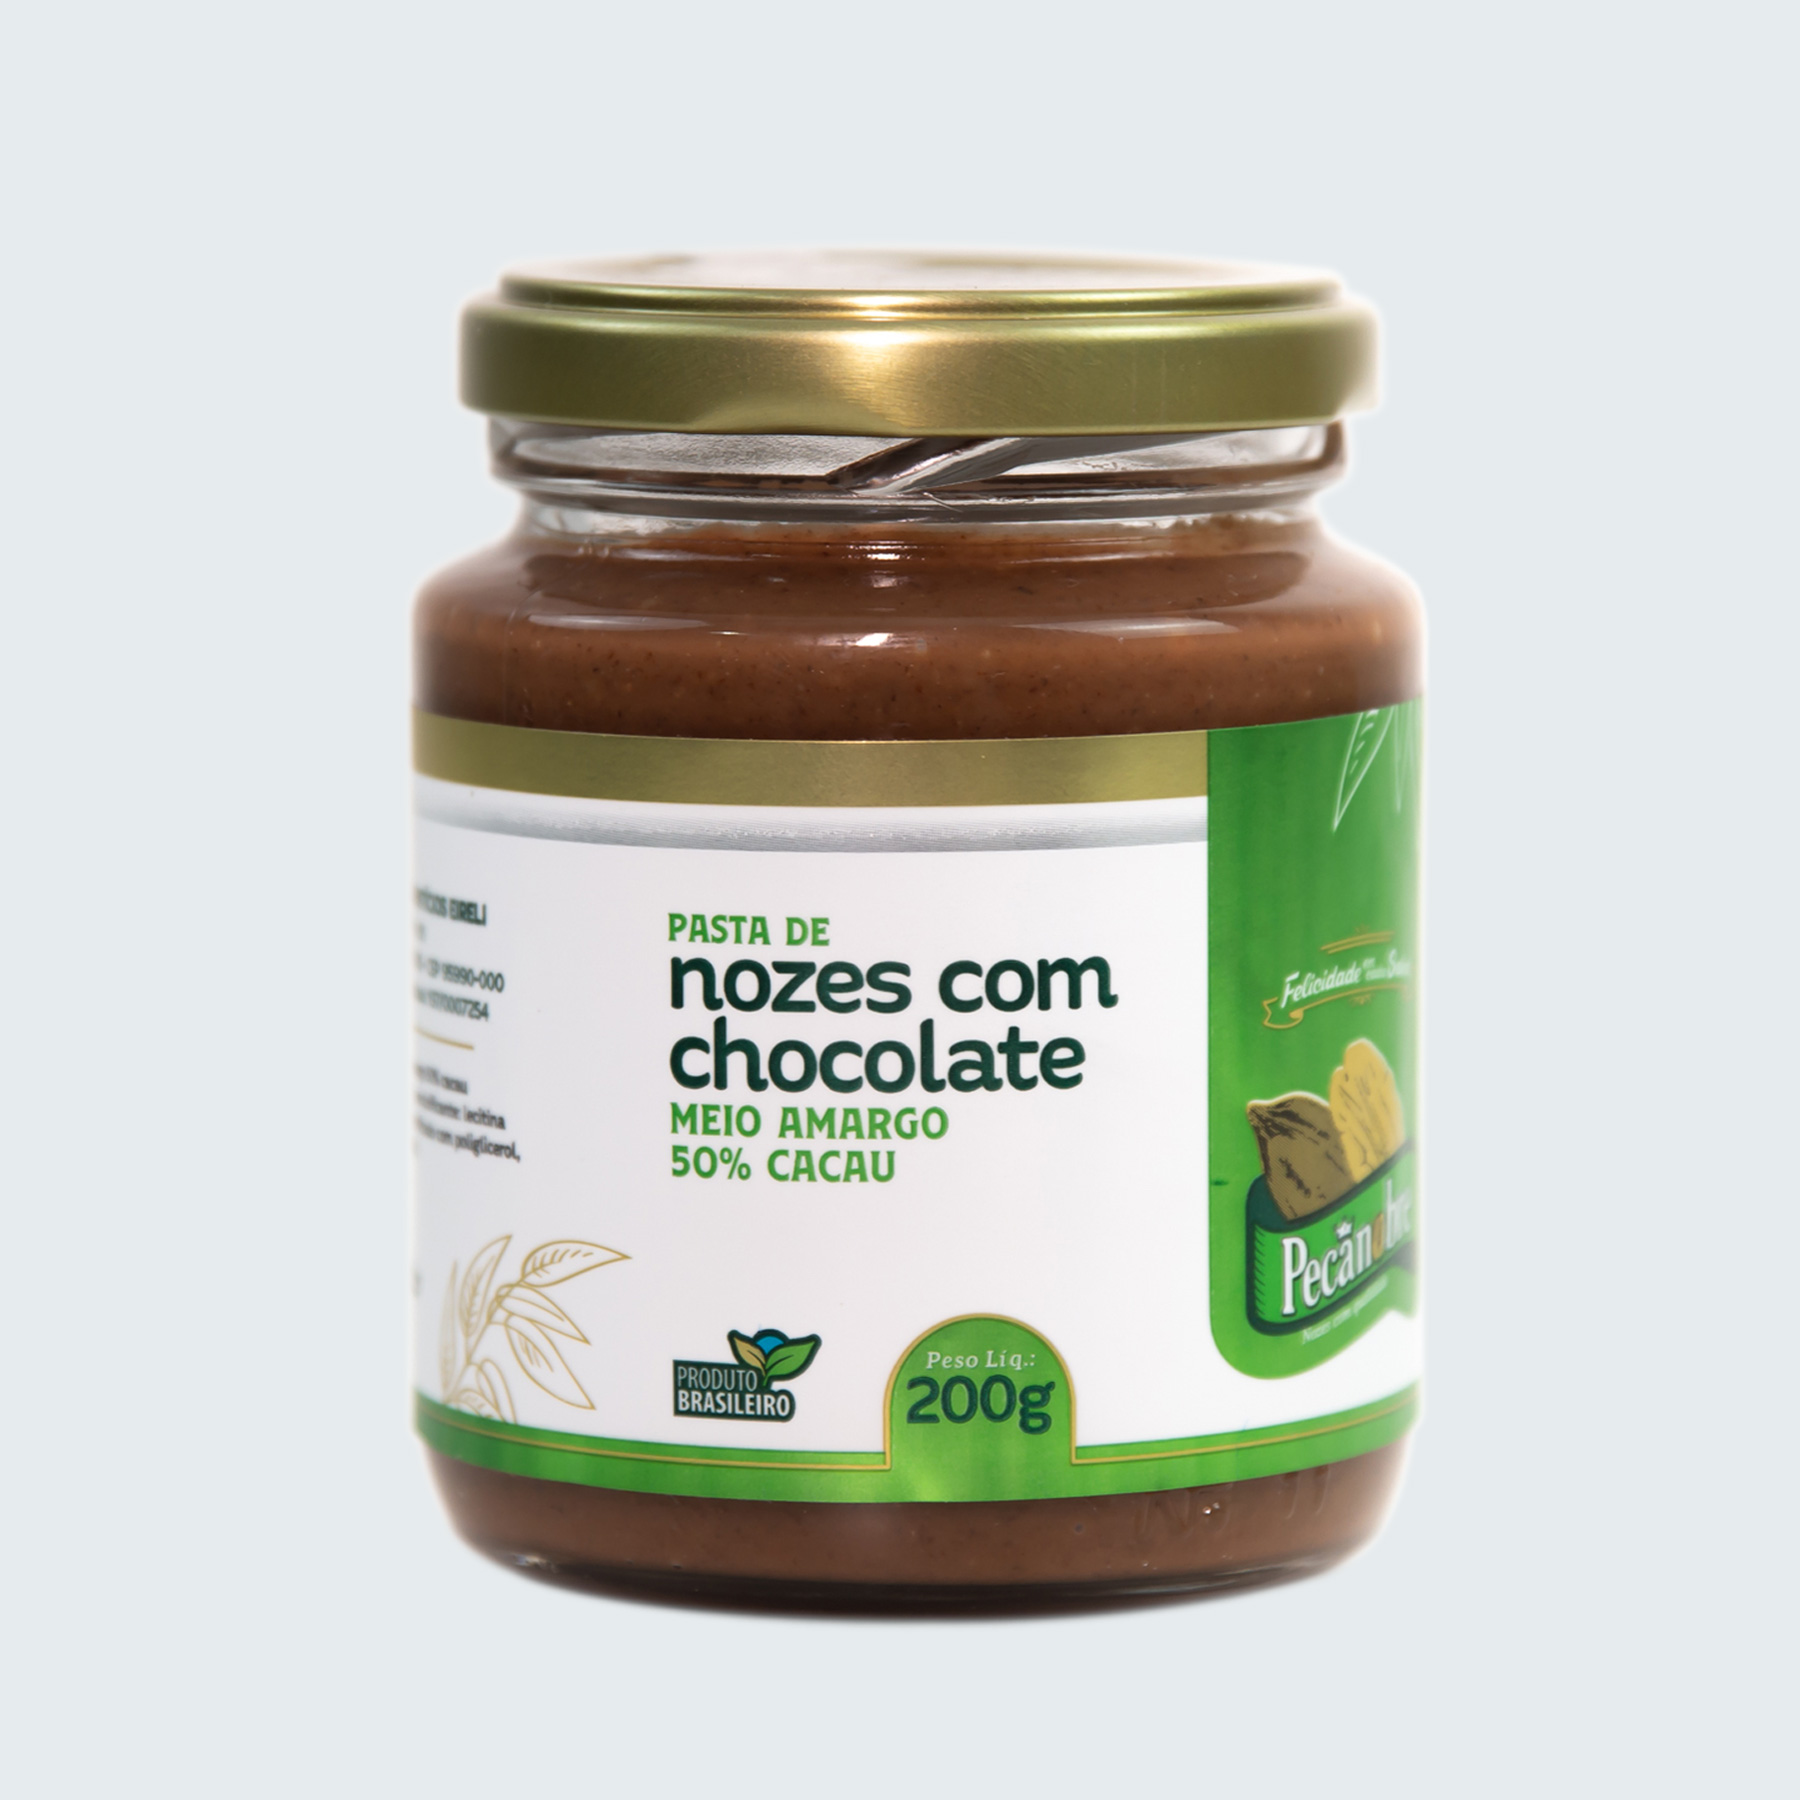 PASTA DE NOZES COM CHOCOLATE 50% CACAU